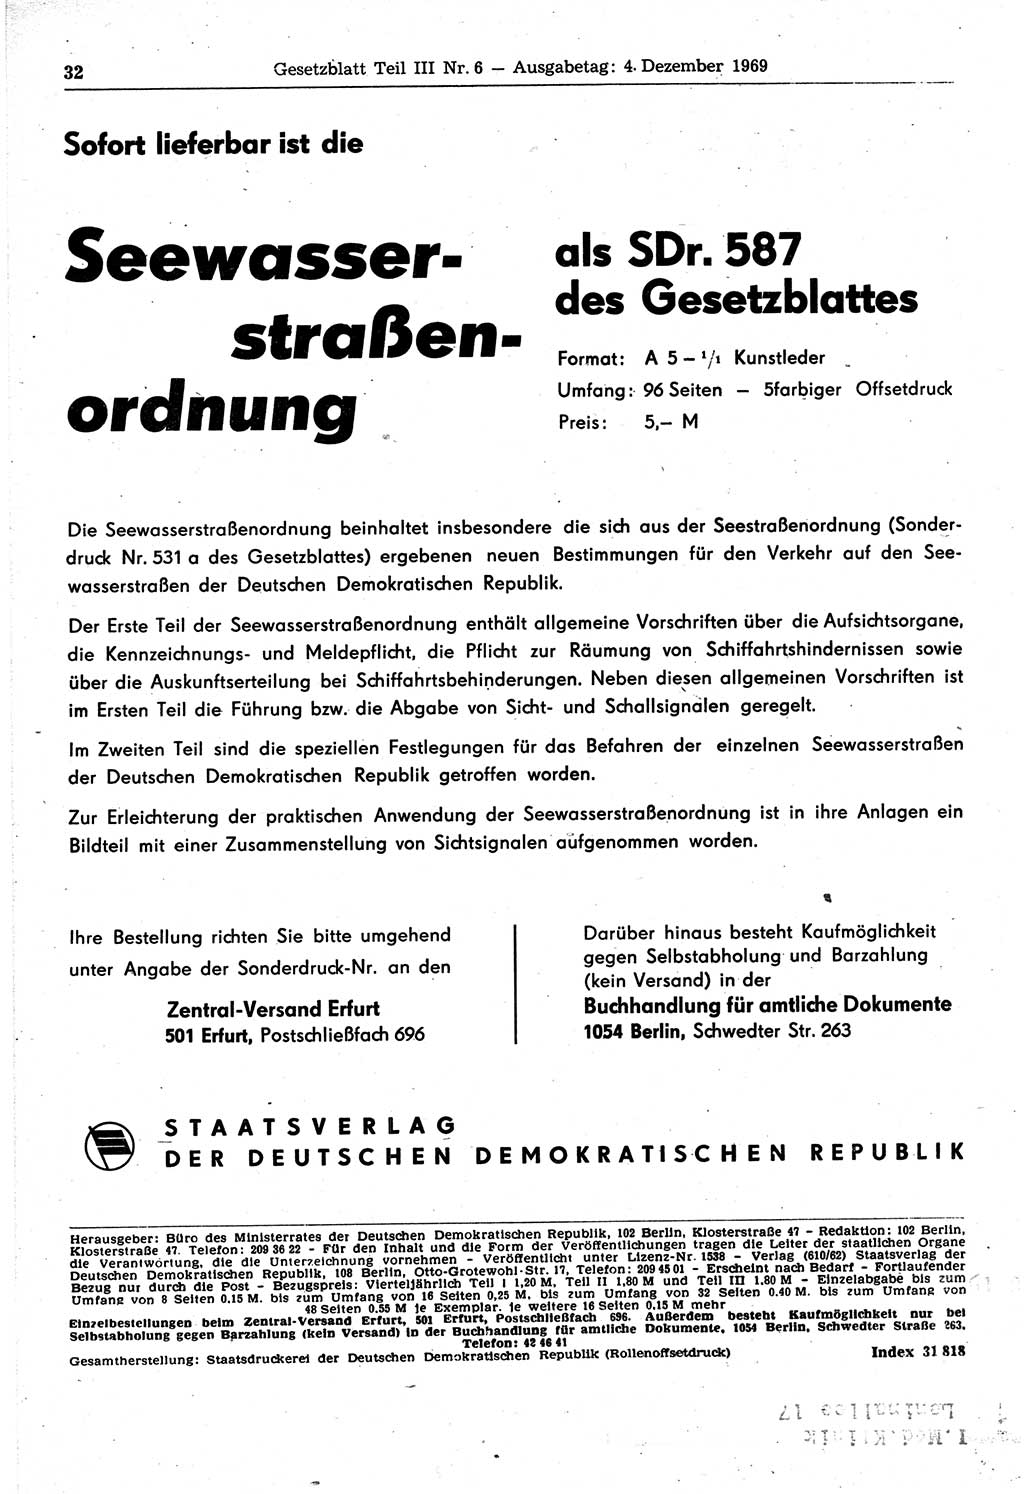 Gesetzblatt (GBl.) der Deutschen Demokratischen Republik (DDR) Teil ⅠⅠⅠ 1969, Seite 32 (GBl. DDR ⅠⅠⅠ 1969, S. 32)